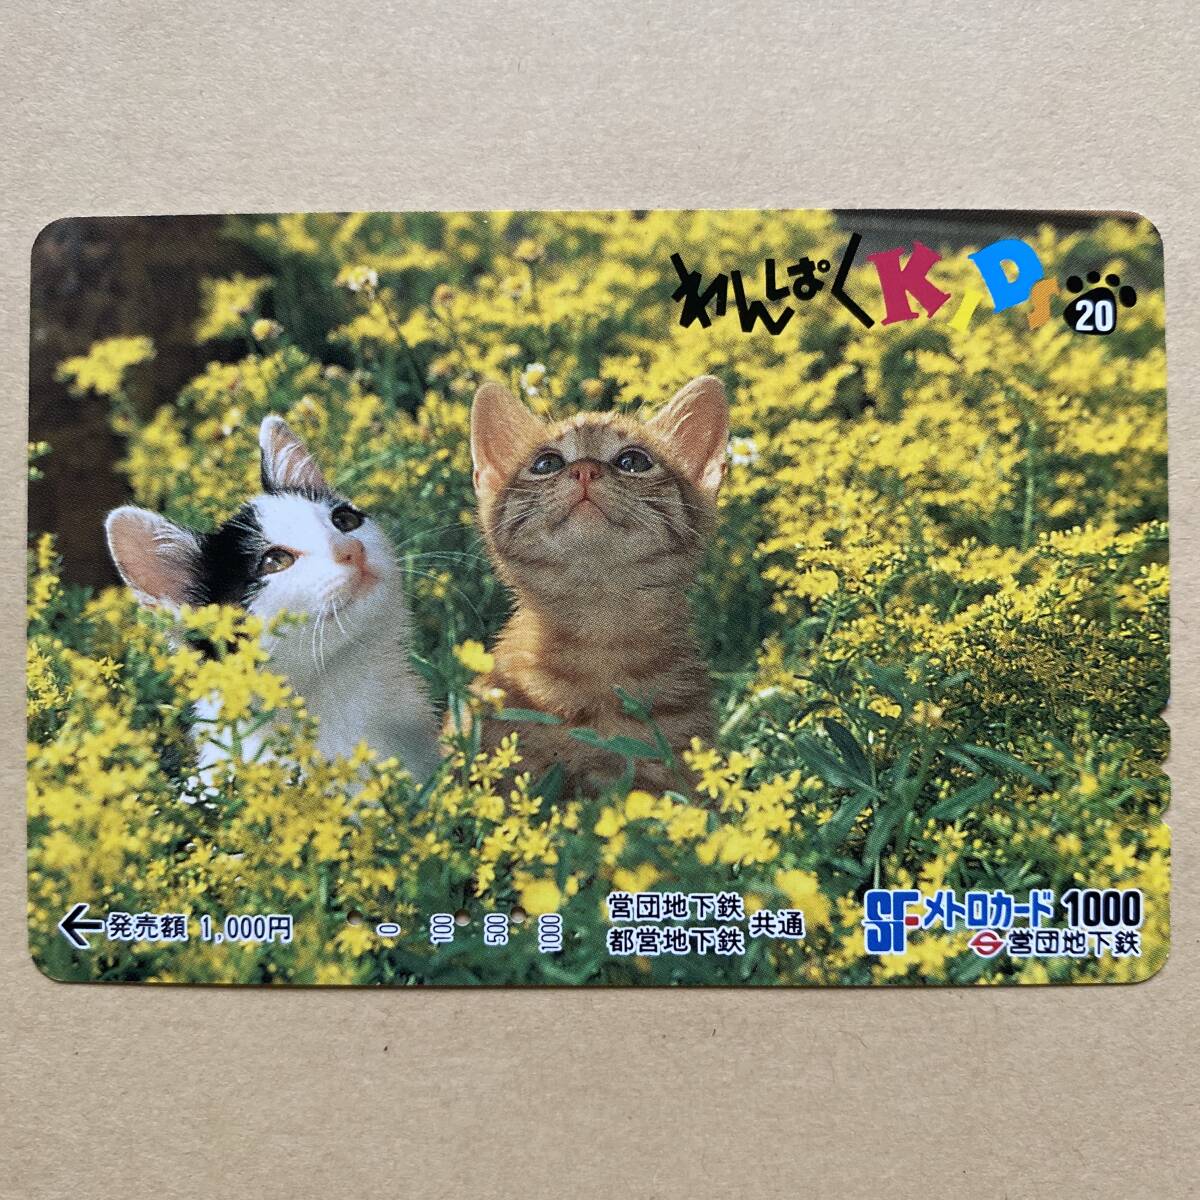 【使用済】 メトロカード 営団地下鉄 東京メトロ わんぱくKIDS20 猫_画像1